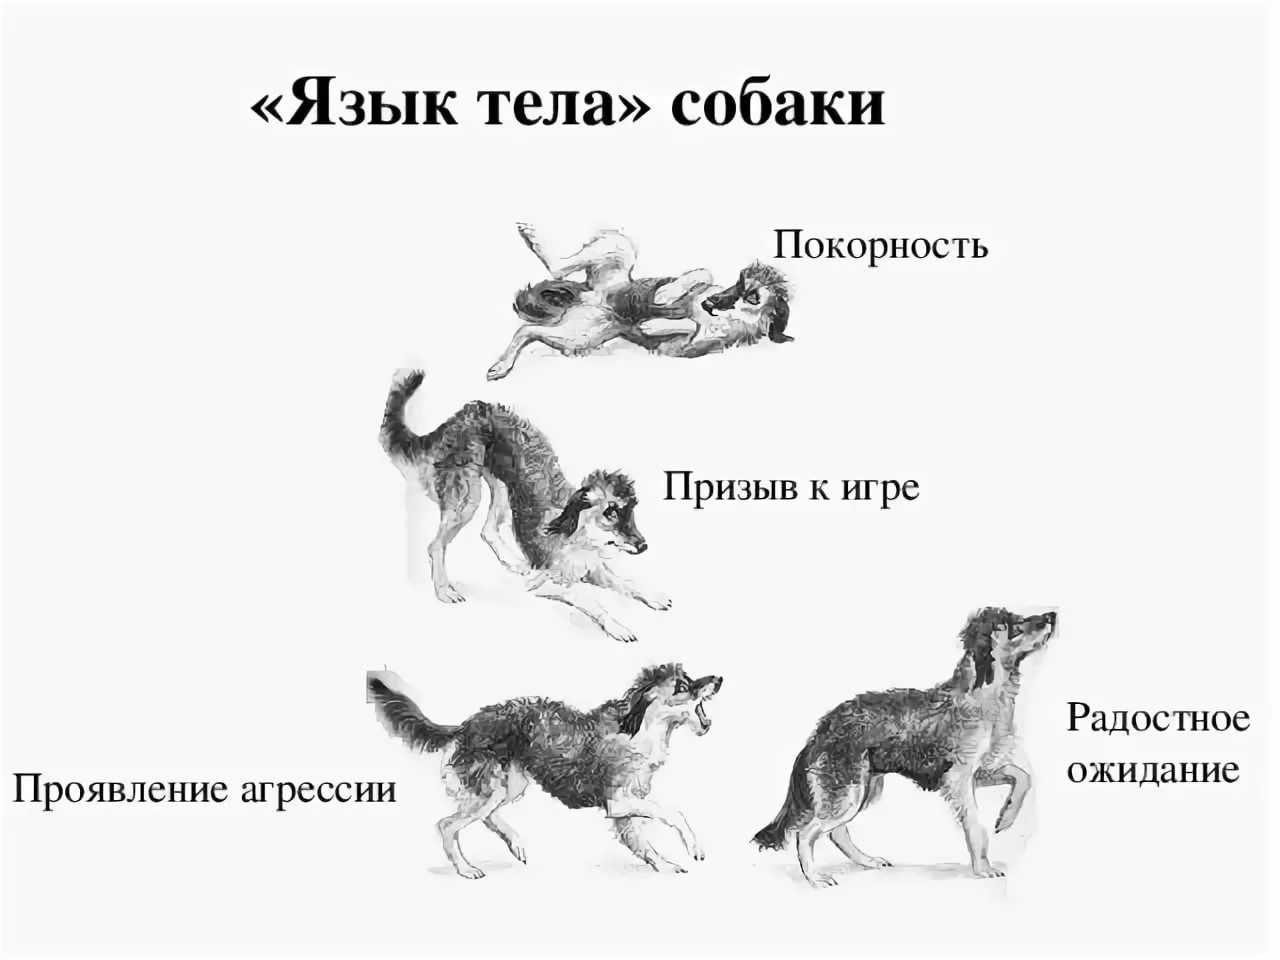 Почему собака считается. Поведение собак. Язык тела собаки в картинках. Араедение собак. Виды поведения собак.